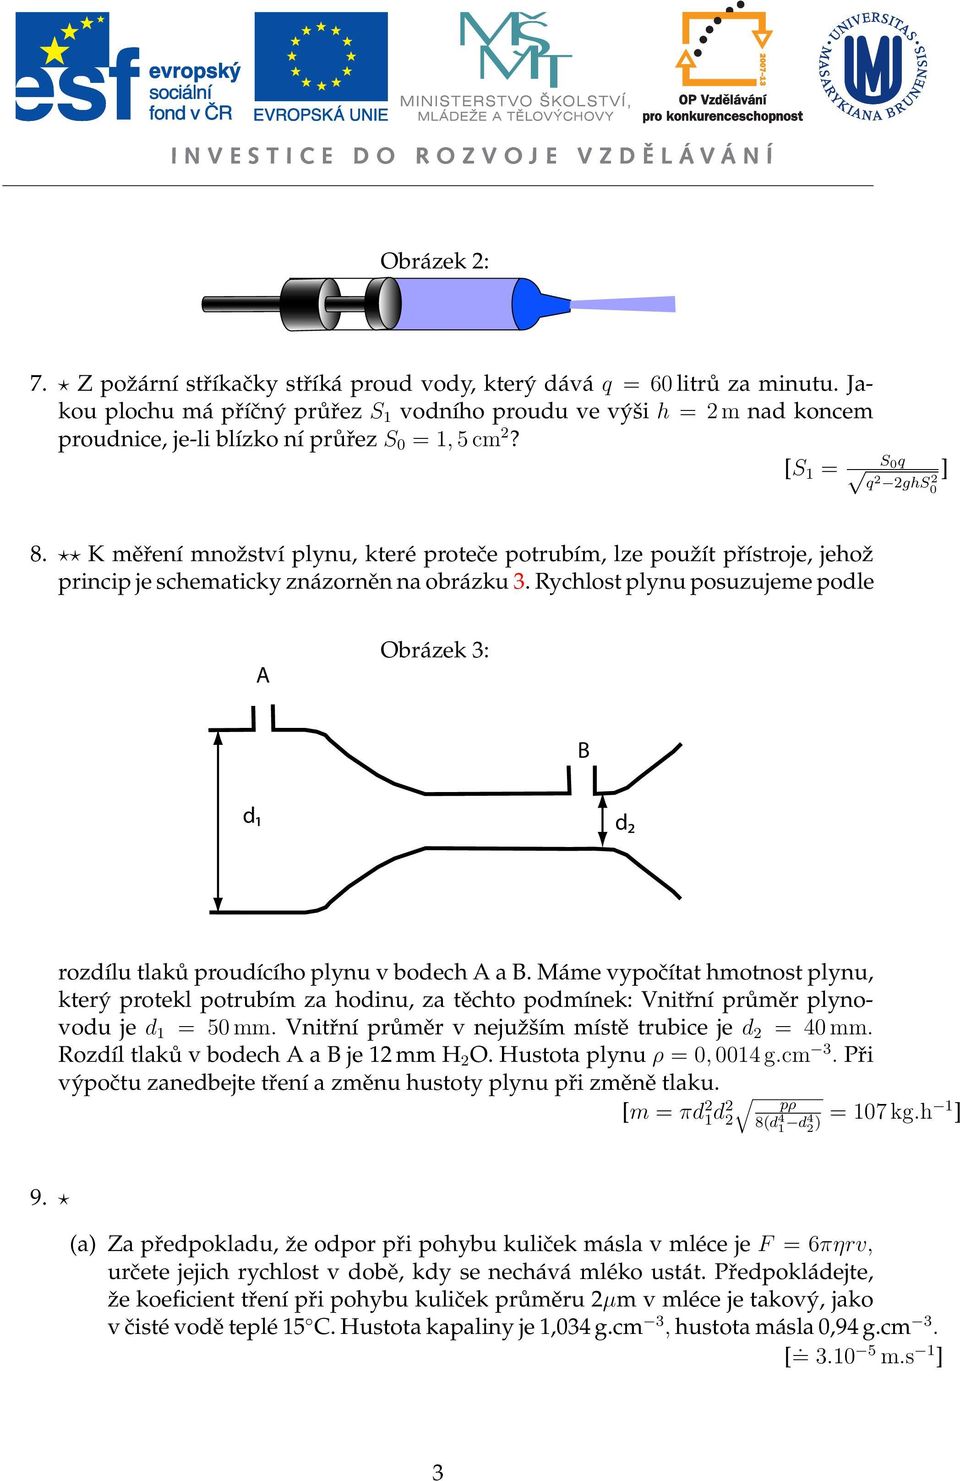 K měření mnoˇzství plynu, které proteče potrubím, lze pouˇzít přístroje, jehoˇz princip je schematicky znázorněn na obrázku 3.